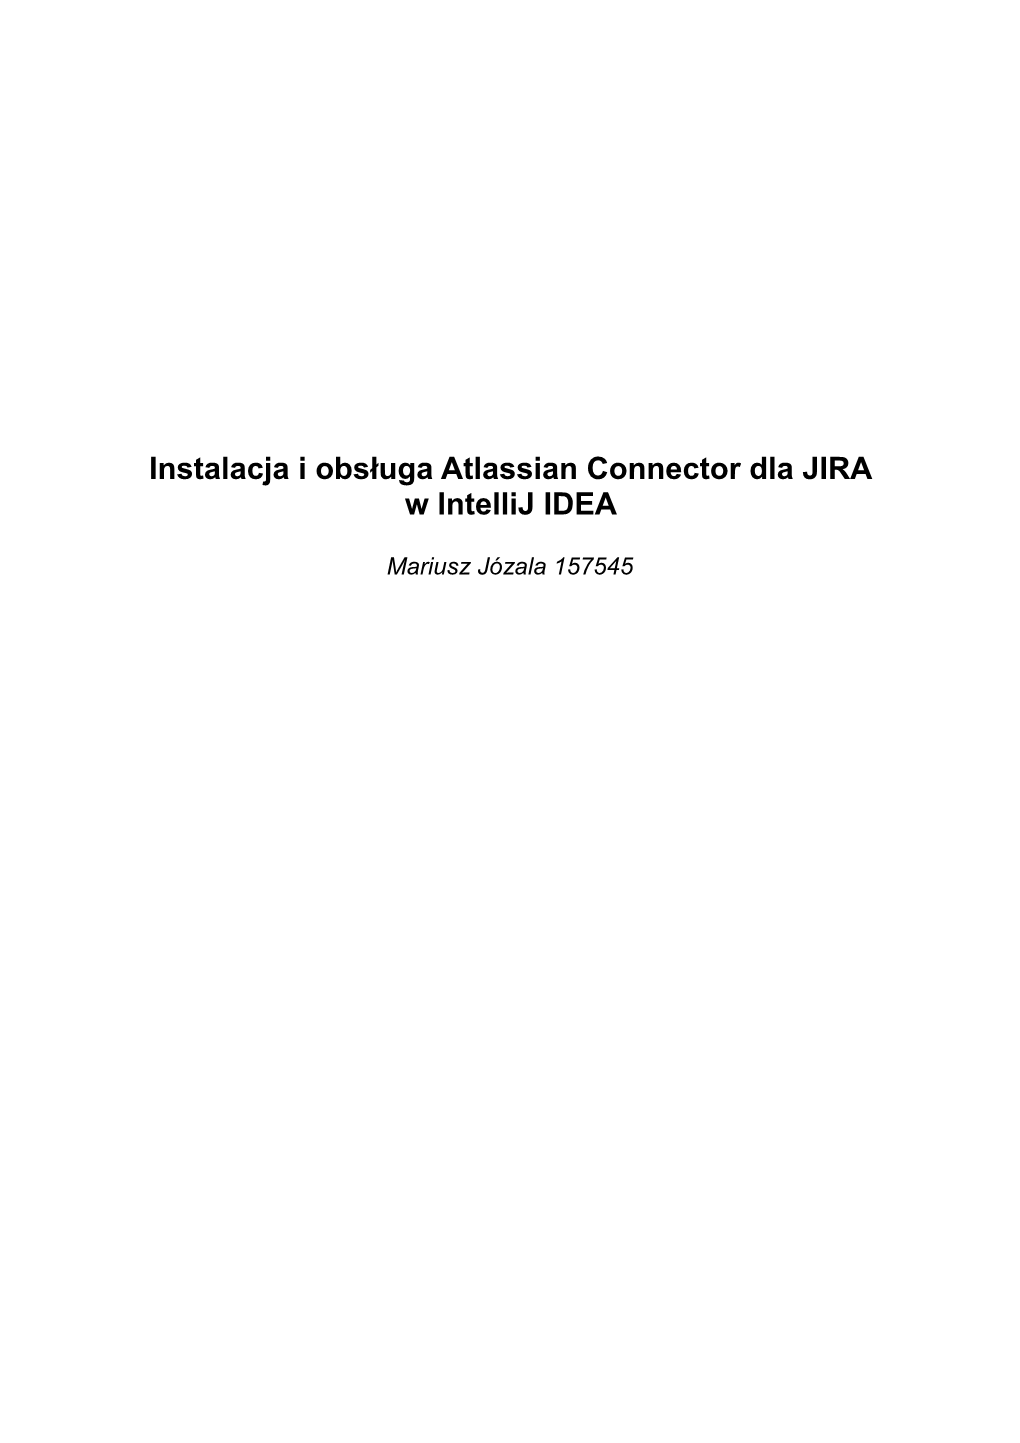 Instalacja I Obsługa Atlassian Connector Dla JIRA W Intellij IDEA